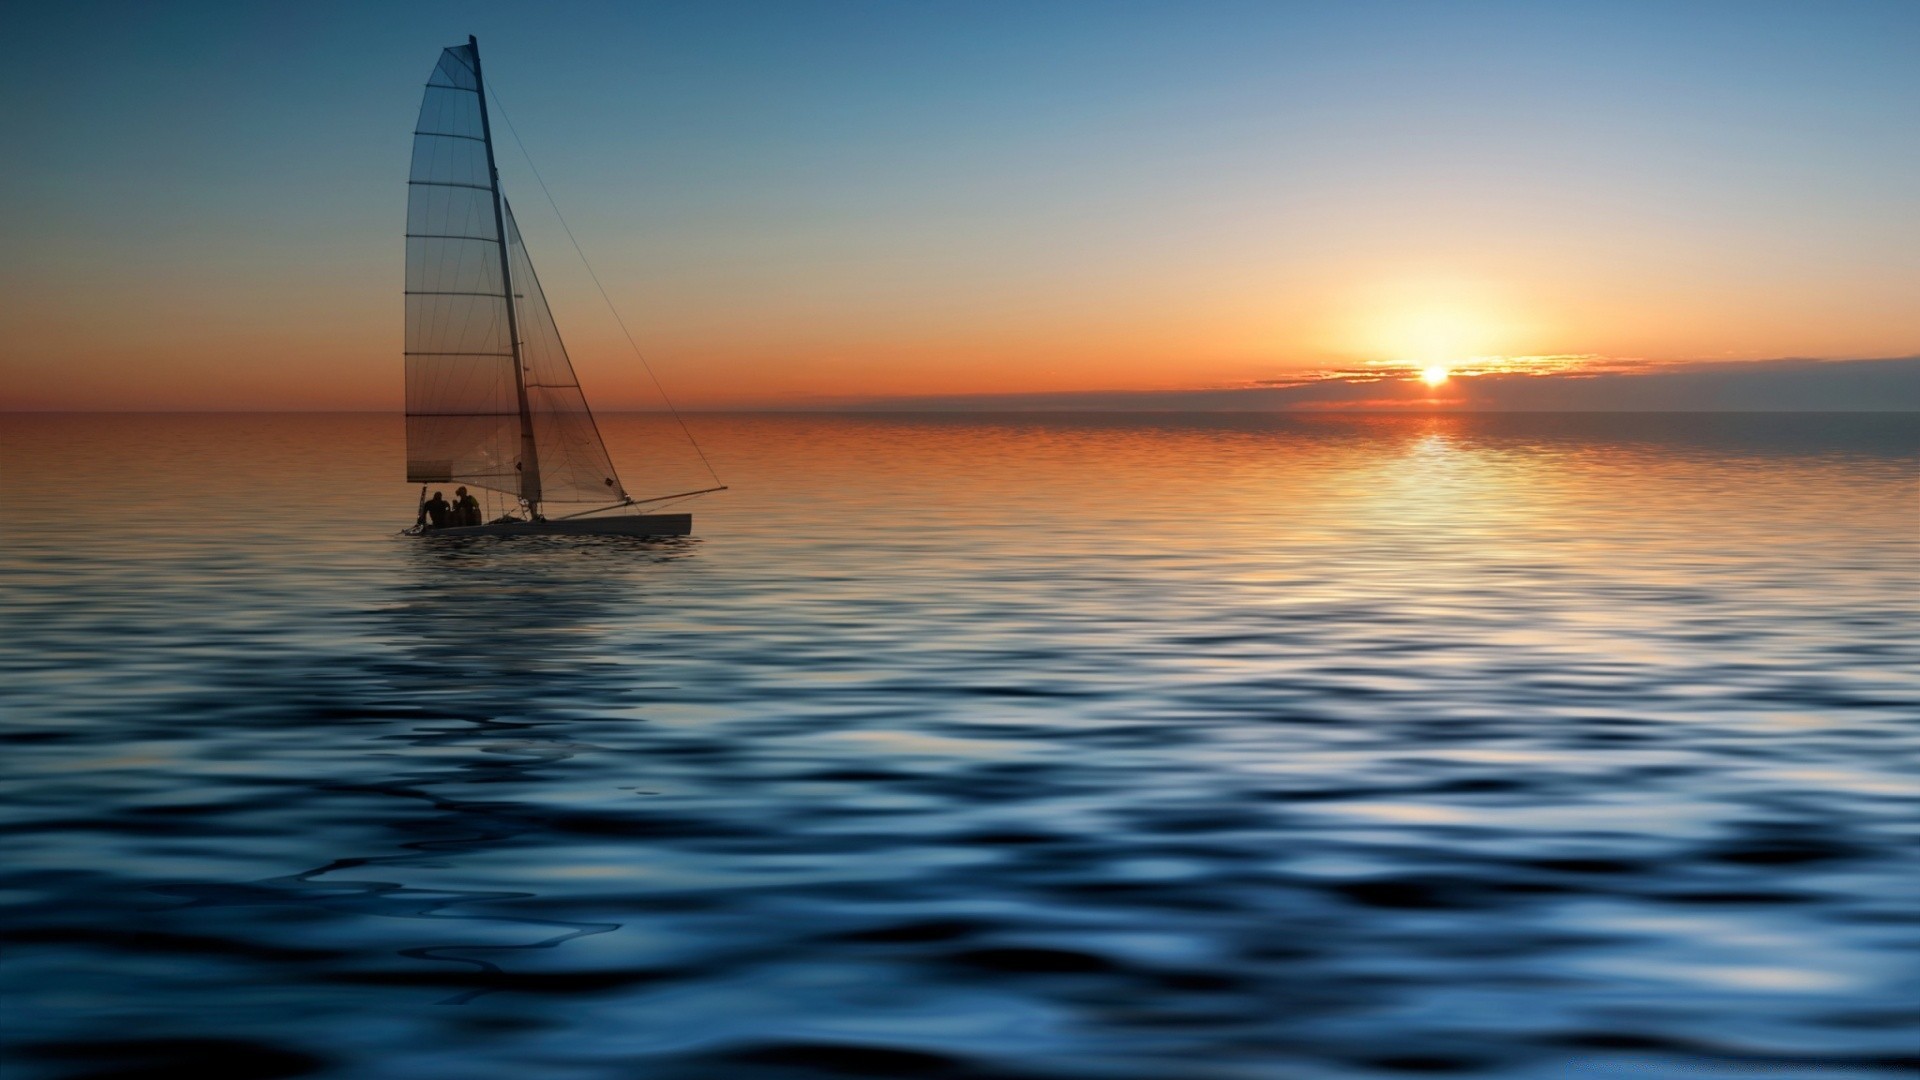 sports sunset water sun dawn sea ocean dusk sailboat summer evening seascape watercraft fair weather beach recreation